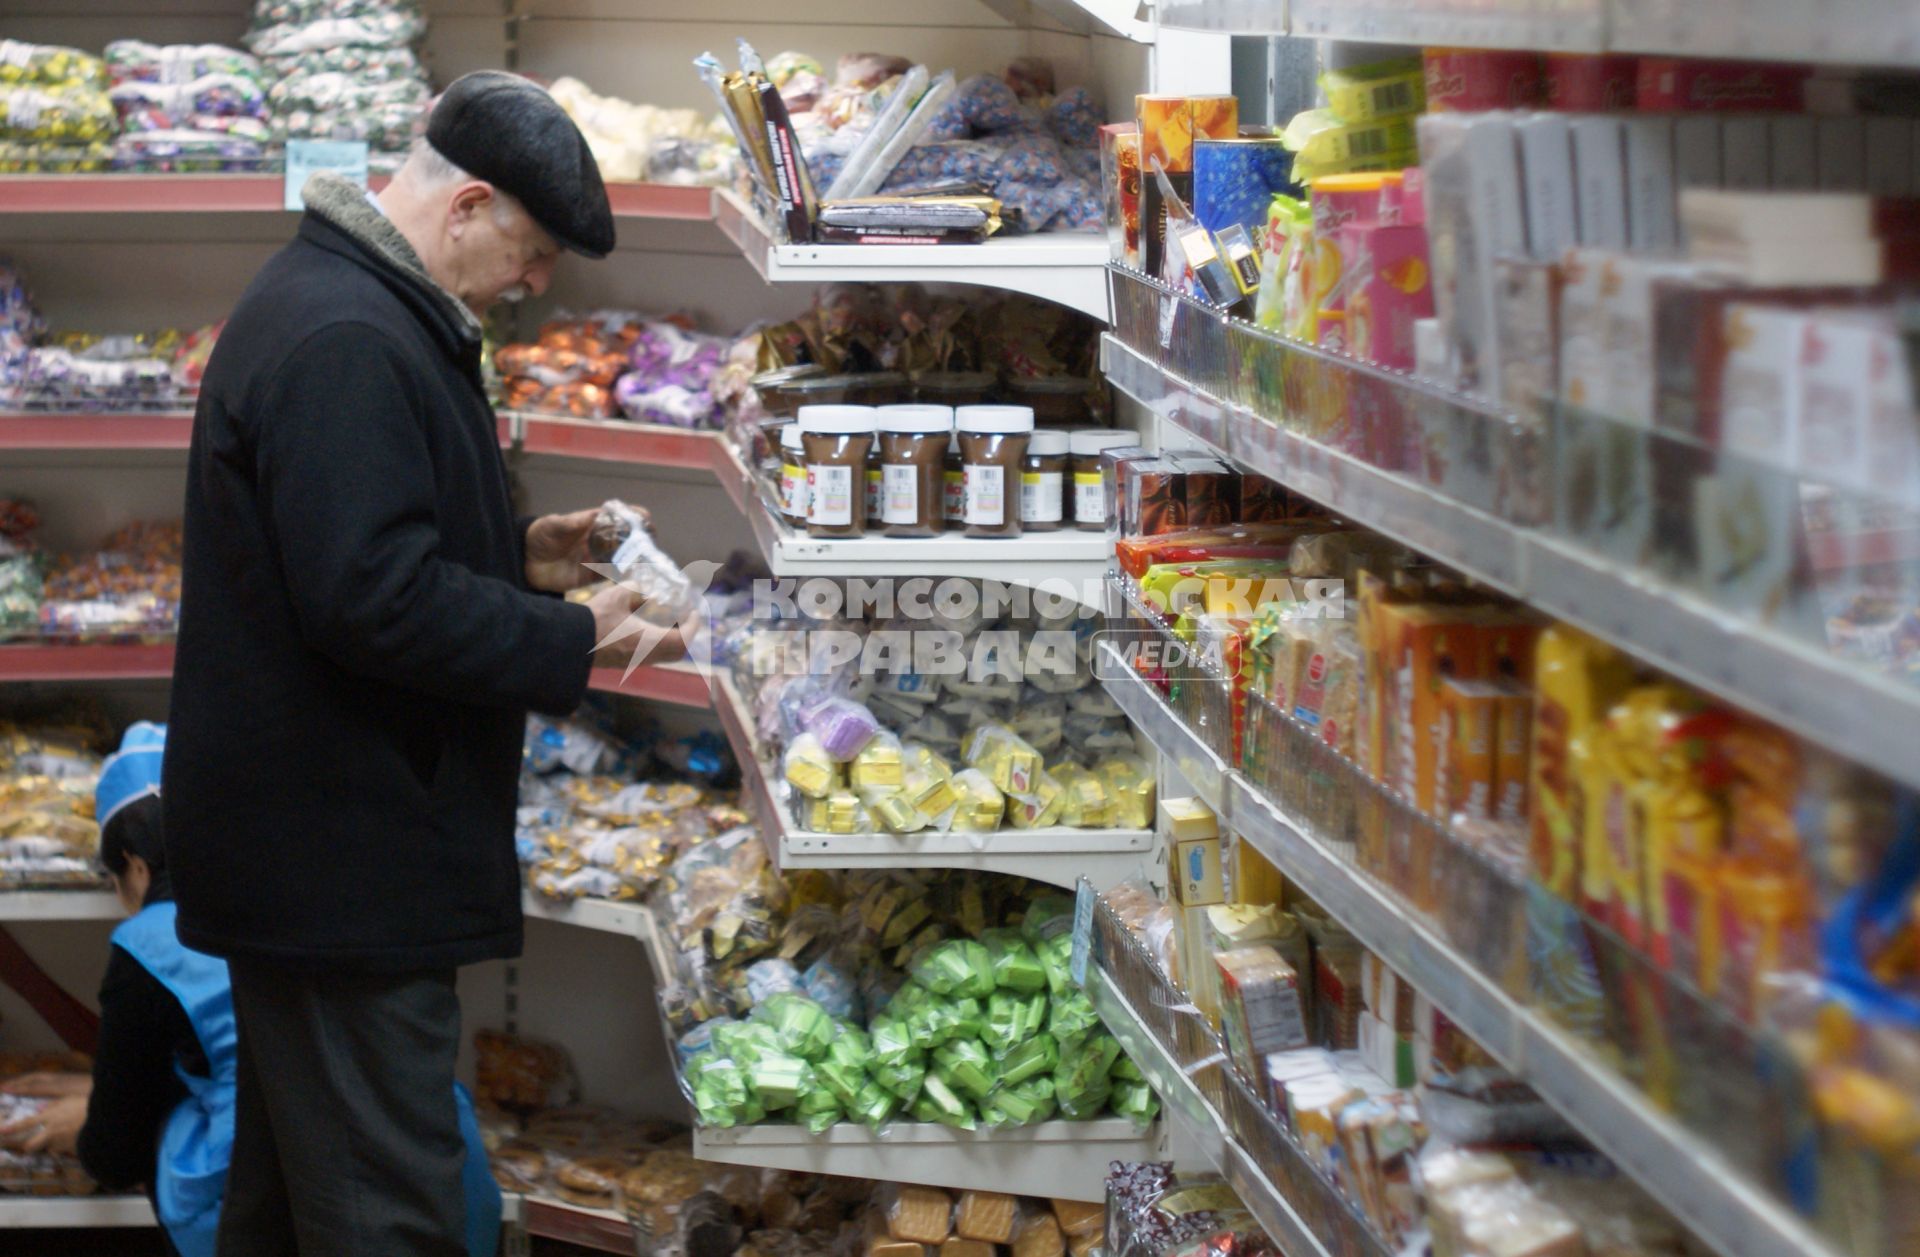 Мужчина у прилавка магазина осматривает продукты.